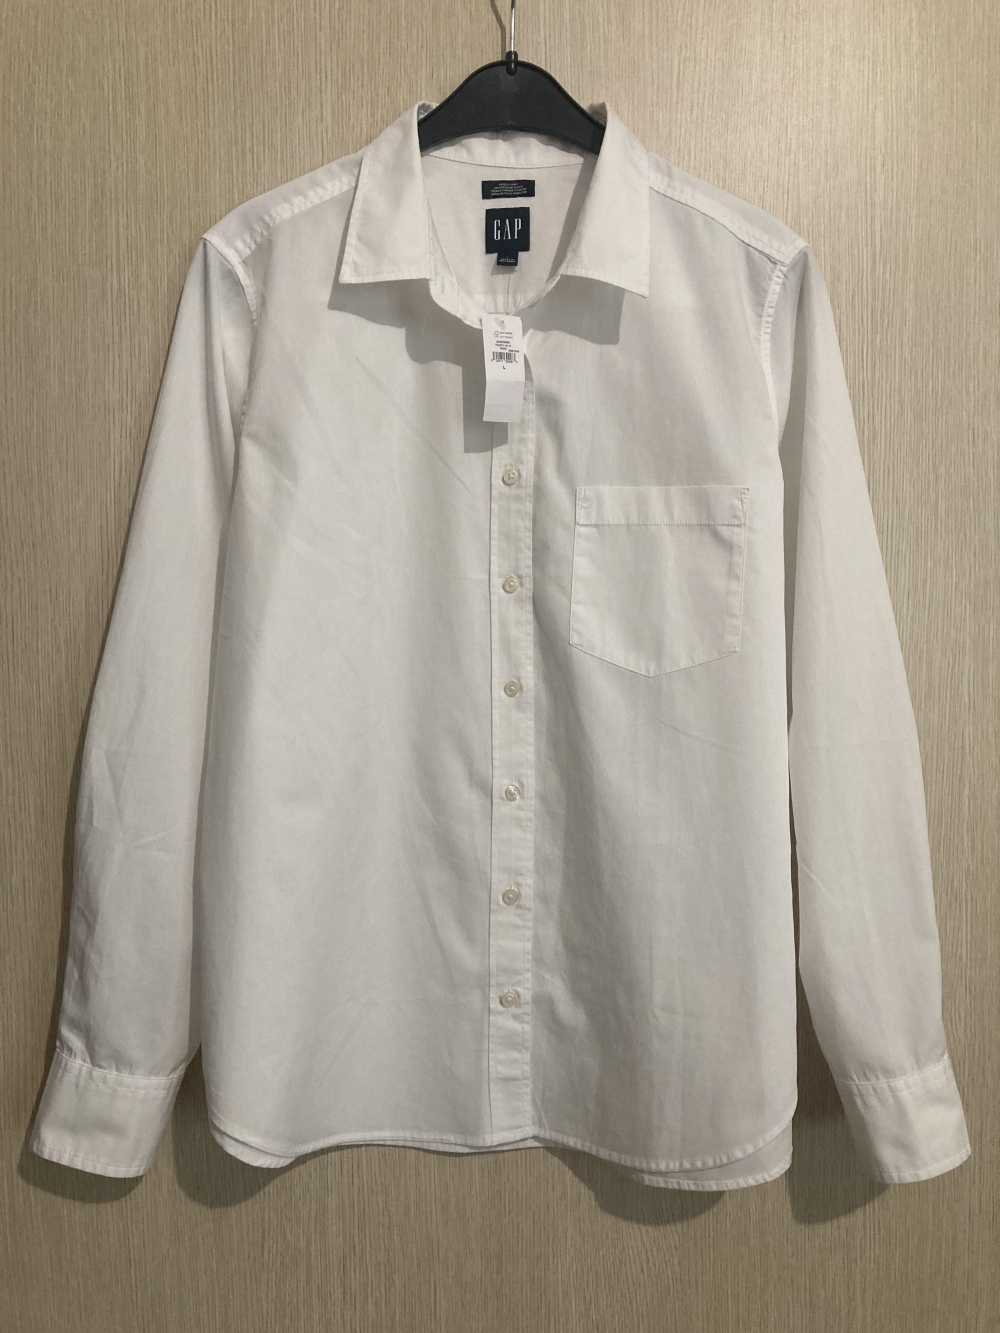 Рубашка “ Gap ”, L размер